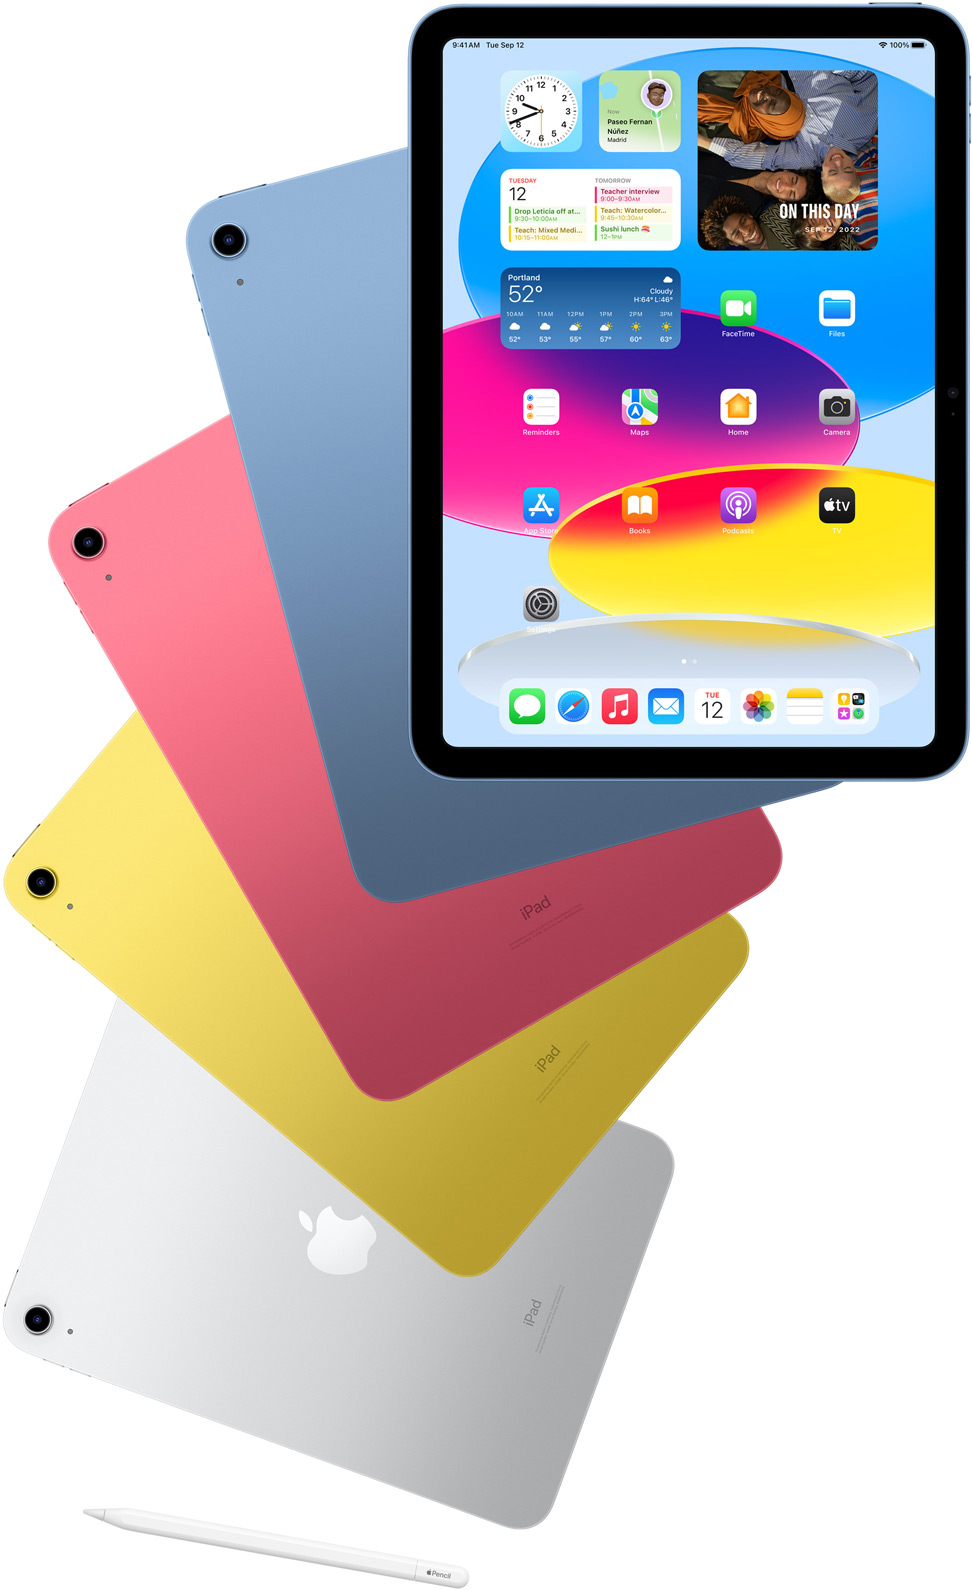 Μπροστινή όψη ενός iPad με την οθόνη Αφετηρίας και άλλα iPad πίσω του με πλάτη σε Μπλε, Ροζ, Κίτρινο και Ασημί χρώμα. Ένα Apple Pencil δίπλα σε τακτοποιημένα μοντέλα iPad.